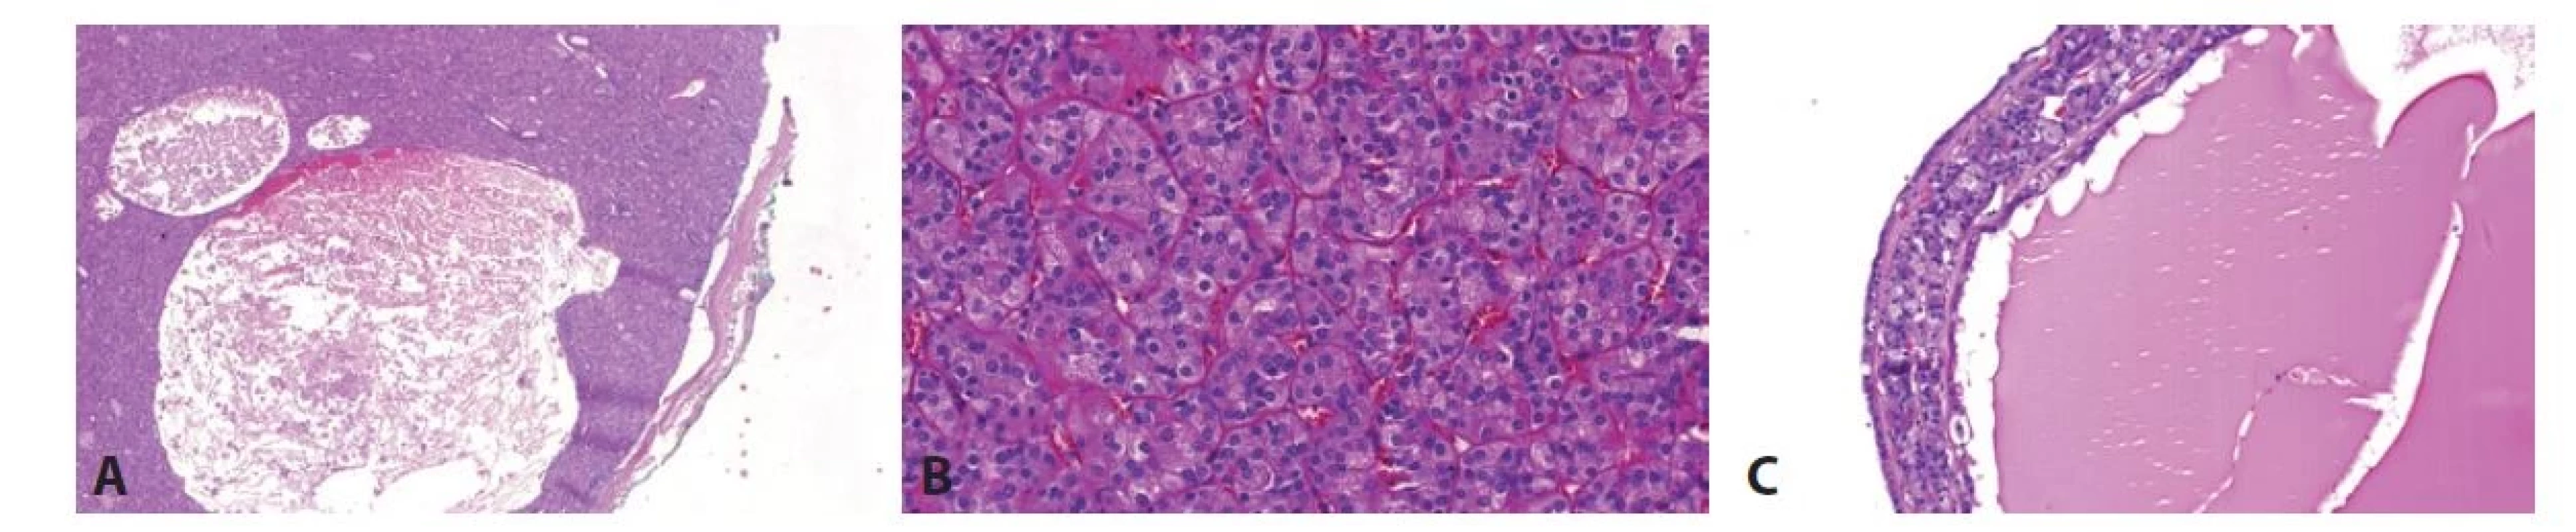 A. ESC je tumor s typickou kombinací solidní a cystické architektury. Obr. 3B. Solidní komponenta je tvořena objemnými buňkami s eosinofilní cytoplasmou
a „high-grade“ jádry. Obr. 3C. Cysty bývají vyplněné eosinofilní tekutinou, stěna cyst je složena z eosinofilních buněk, podobně jako solidní komponenta.